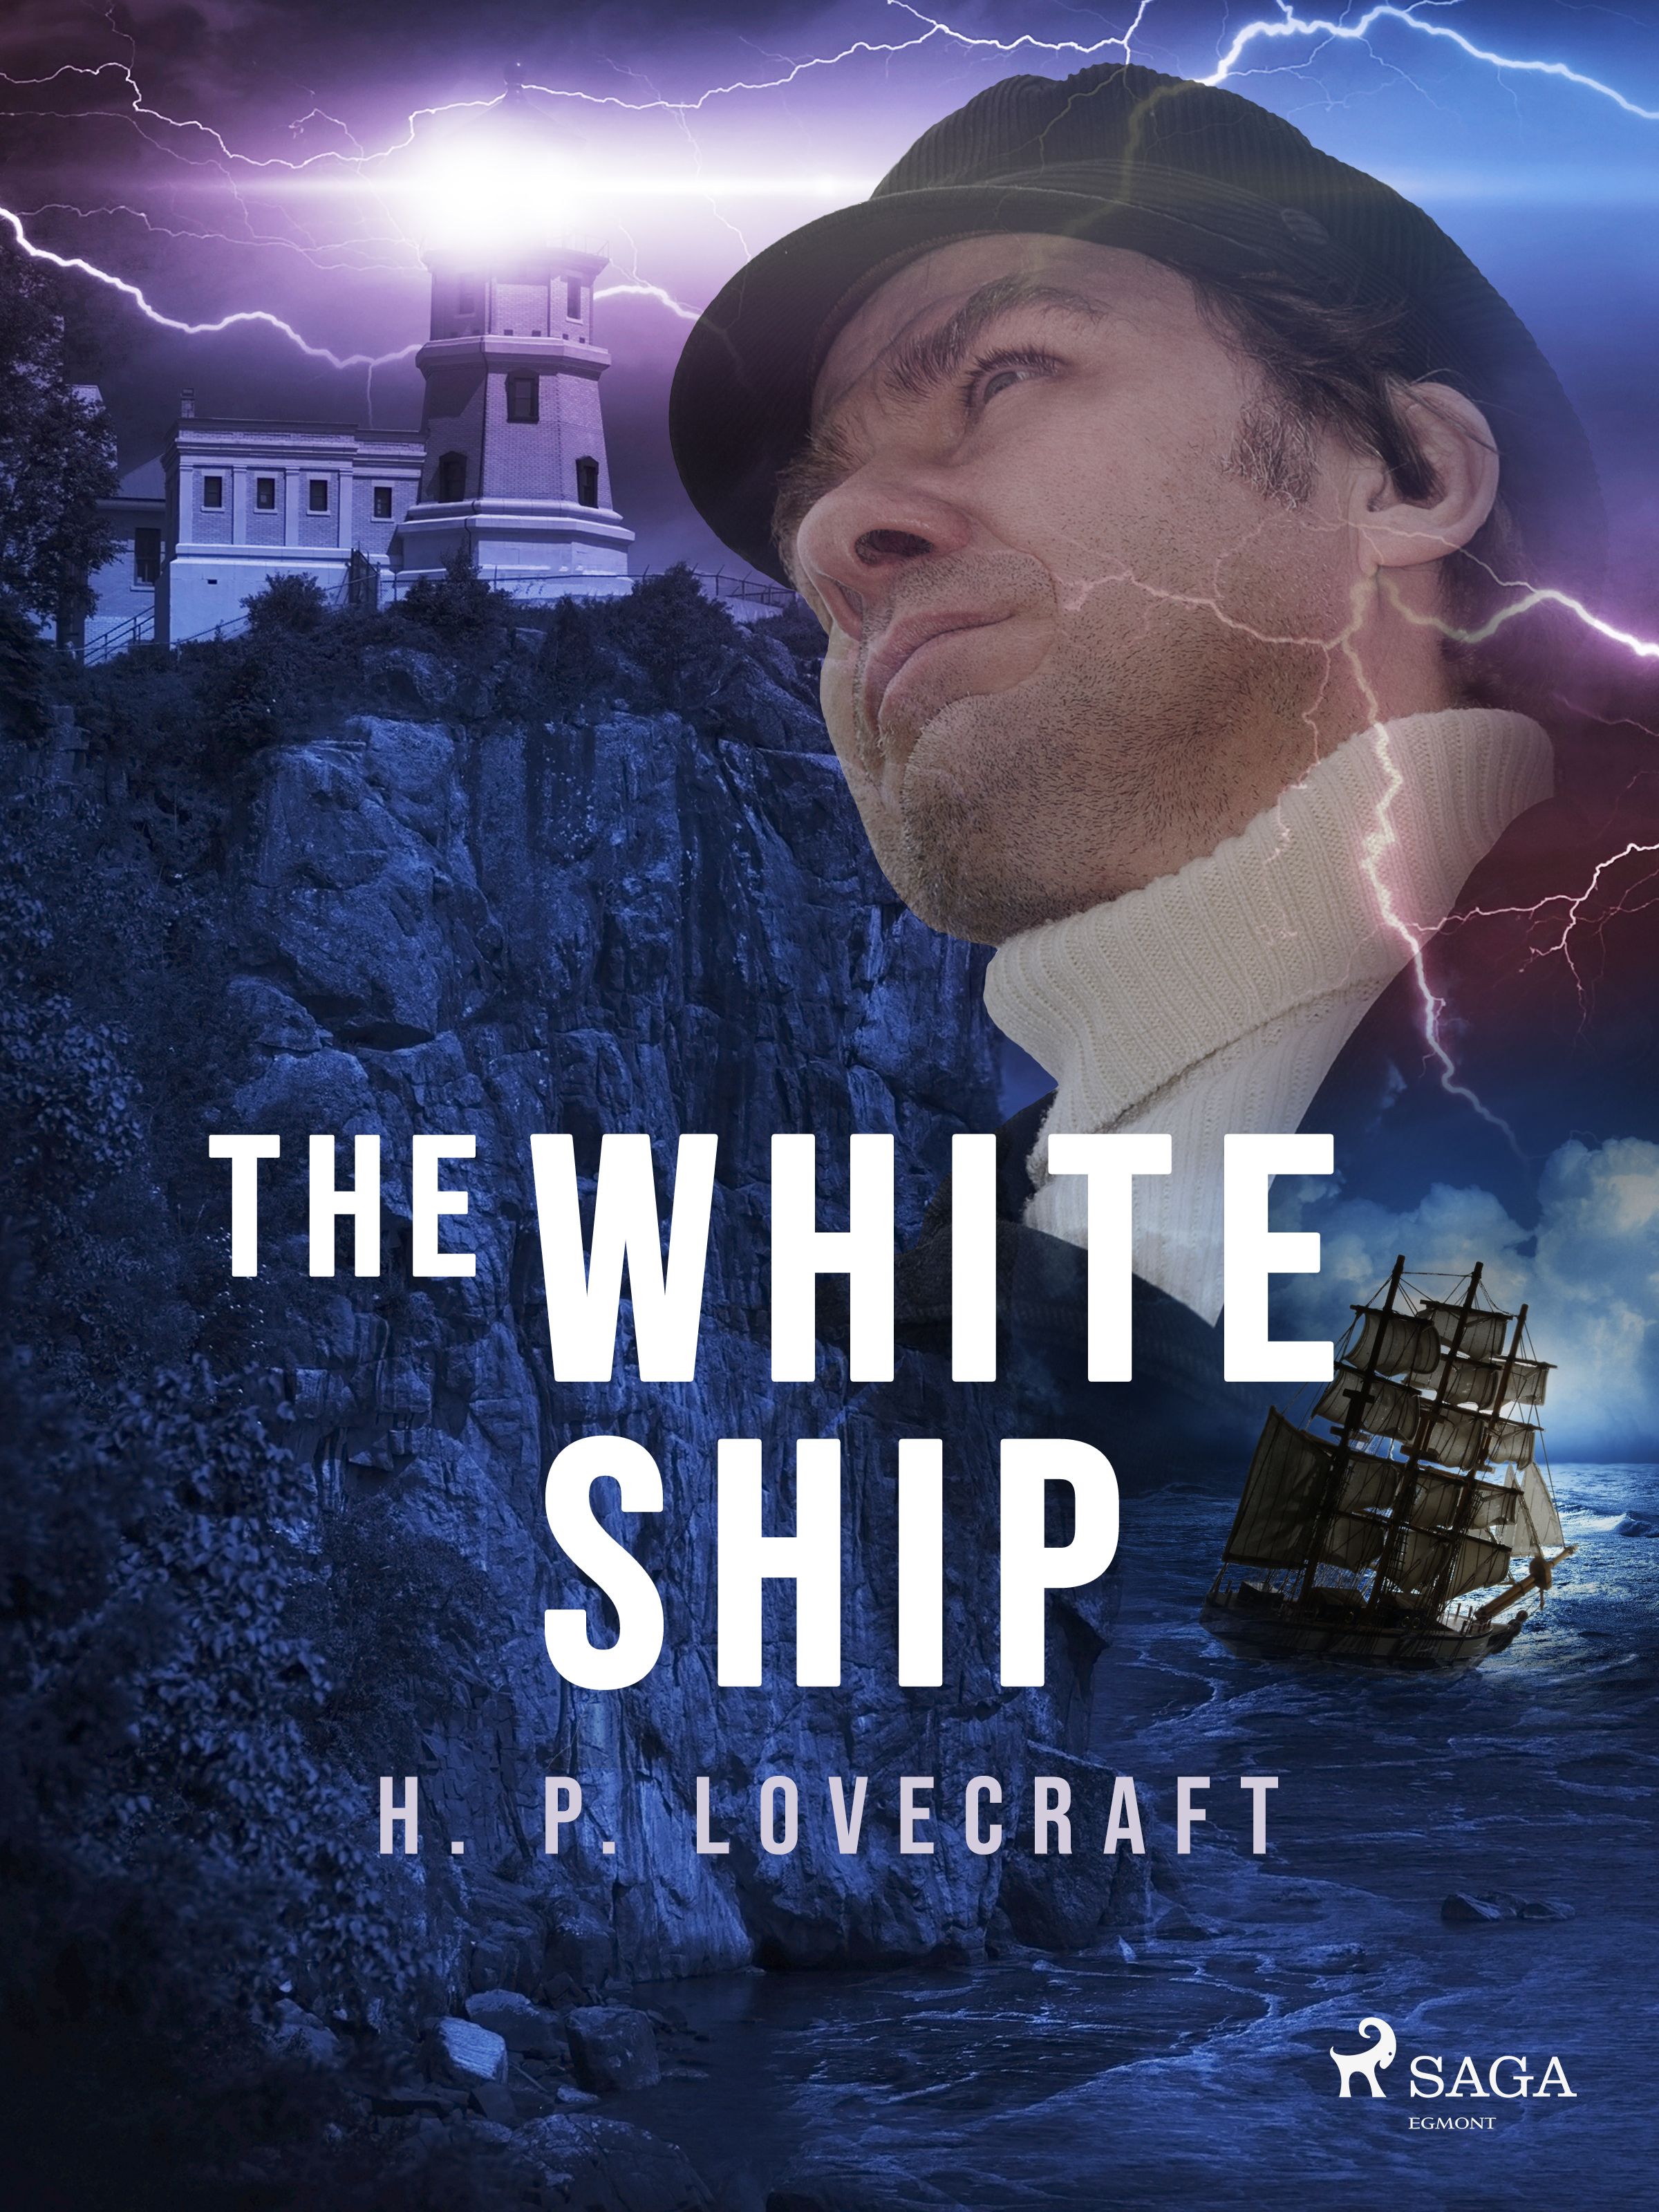 The White Ship, e-bok av H. P. Lovecraft